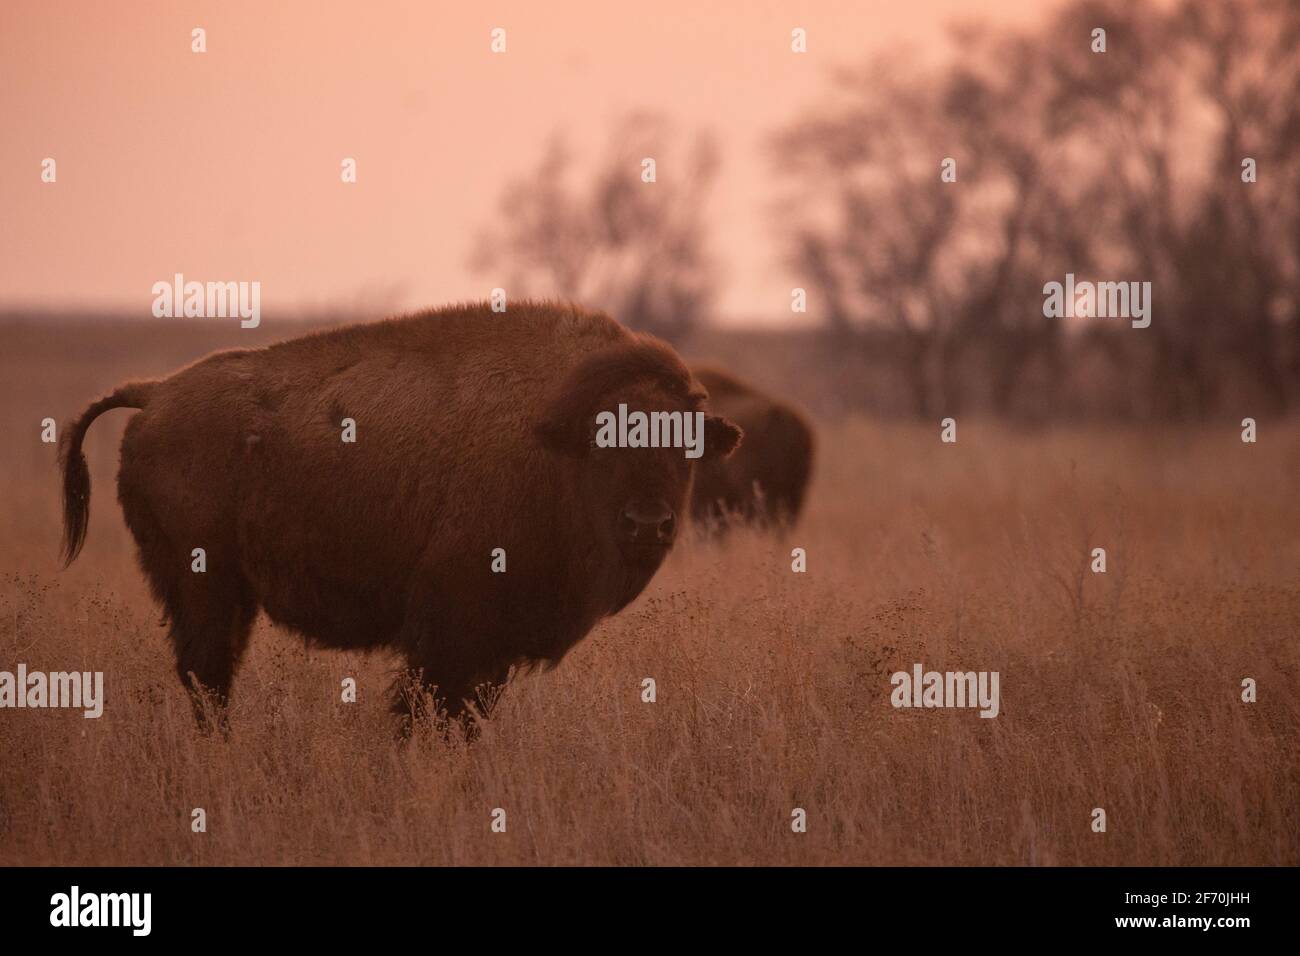 Ein weiblicher (Kuh-)Bison, der auf einem Feld aus Präriegras steht, kurz bevor die Sonne an einem Nachmittag in South Dakota untergeht. Wald und ein weiterer Wisent im Hintergrund Stockfoto